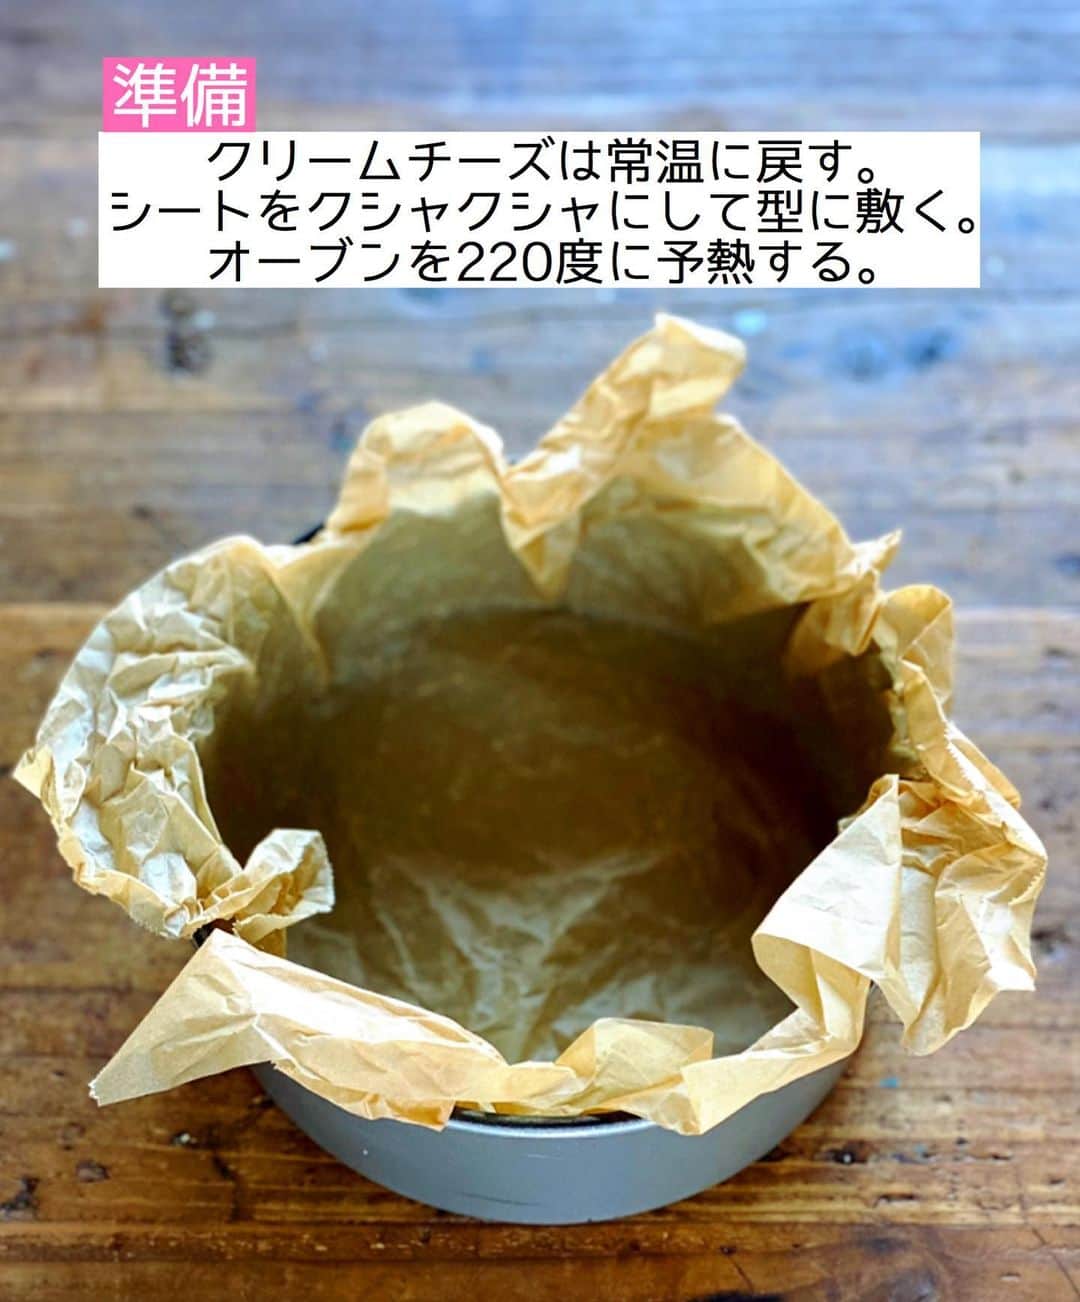 Mizuki【料理ブロガー・簡単レシピ】さんのインスタグラム写真 - (Mizuki【料理ブロガー・簡単レシピ】Instagram)「・﻿ 【#レシピ 】ーーーーーーーー﻿ ♡抹茶バスクチーズケーキ♡﻿ ーーーーーーーーーーーーーー﻿ ﻿ ﻿ ﻿ おはようございます(*^^*)﻿ ﻿ 2021年初レシピは﻿ \\ 抹茶バスクチーズケーキ //﻿ ﻿ まろやかでクリーミーな生地に﻿ 濃厚な抹茶風味が相性抜群♡﻿ もちろん混ぜて焼くだけ！の﻿ 超〜簡単レシピです(*´艸`)﻿ ﻿ 今回は丸型で焼きましたが﻿ マフィン型やパウンド型でも﻿ 作ることができますよ〜♩﻿ ↓﻿ ［マフィン型→220度、上段20〜25分］﻿ ［パウンド型→220度、下段か中段35分］﻿ ﻿ お正月のおやつにもぴったりなので﻿ よかったらお試し下さいね(*^^*)﻿ ﻿ ﻿ ﻿ ＿＿＿＿＿＿＿＿＿＿＿＿＿＿＿＿＿＿＿＿﻿ 【15cm底取れ型】﻿ クリームチーズ...200g﻿ 砂糖...60g﻿ 卵...2個﻿ 抹茶パウダー...大1.5﻿ 生クリーム...150ml﻿ ﻿ (準備)クリームチーズは常温に戻す。クッキングシートをクシャクシャにして型に敷く。オーブンを220度に予熱する。﻿ 1.ボウルにクリームチーズを入れてなめらかにし、砂糖→卵→抹茶(ふるう)→生クリームの順に加え、その都度よく混ぜる(なるべく泡立てないように)。﻿ 2.型に注ぎ、予熱したオーブンで35分焼く。焼けたらアミにのせて冷まし、冷蔵庫で一晩冷やす。﻿ ￣￣￣￣￣￣￣￣￣￣￣￣￣￣￣￣￣￣￣￣﻿ ﻿ ﻿ ﻿ ﻿ 《ポイント》﻿ ♦︎クリームチーズはレンジで30〜40秒加熱すると柔らかくなります♩﻿ ♦︎生地の材料を混ぜる時はなるべく泡立てないようにして下さい♩﻿ ♦︎しっかり一晩冷やして下さい♩﻿ ﻿ ﻿ ﻿ ﻿ ﻿ ﻿ ﻿ ﻿ ﻿ 📕新刊発売中📕﻿ 【ラクしておいしい！#1品晩ごはん 】﻿ ￣￣￣￣￣￣￣￣￣￣￣￣￣￣￣￣￣﻿ 私たちだってヘトヘトな日がある•••﻿ 毎日何品も作っていられない•••﻿ もうごはんに悩みたくない😢﻿ そんな時、1品ごはんはいかがでしょう？﻿ というご提案です✨﻿ ﻿ 【1品ごはん】は﻿ 副菜いらずで全てがシンプル！﻿ ￣￣￣￣￣￣￣￣￣￣￣￣￣￣￣￣￣￣﻿ 一品つくるだけでいいから﻿ 献立を考えなくてよし！﻿ ￣￣￣￣￣￣￣￣￣￣￣￣￣￣￣￣￣￣﻿ 悩まない、疲れない、﻿ 気力や時間がなくてもなんとかなる！﻿ ￣￣￣￣￣￣￣￣￣￣￣￣￣￣￣￣￣￣﻿ そんな頼りになる﻿ 便利なお助けごはんです☺️💕﻿ (ハイライトに🔗貼っています✨)﻿ ￣￣￣￣￣￣￣￣￣￣￣￣￣￣￣￣￣﻿ ﻿ ﻿ ﻿ ﻿ ﻿ ⭐️発売中⭐️﻿ ＿＿＿＿＿＿＿＿＿＿＿＿＿＿＿＿＿＿﻿ しんどくない献立、考えました♩﻿ \15分でいただきます/﻿ 📕#Mizukiの2品献立 📕﻿ ﻿ 和食をもっとカジュアルに♩﻿ \毎日のごはんがラクになる/﻿ 📘#Mizukiの今どき和食 📘﻿ ﻿ ホケミレシピの決定版♩﻿ \はじめてでも失敗しない/﻿ 📙ホットケーキミックスのお菓子 📙﻿ ﻿ NHKまる得マガジンテキスト☆﻿ ホットケーキミックスで﻿ 📗絶品おやつ&意外なランチ📗﻿ ￣￣￣￣￣￣￣￣￣￣￣￣￣￣￣￣￣￣﻿ ﻿ ﻿ ﻿ ＿＿＿＿＿＿＿＿＿＿＿＿＿＿＿＿＿＿﻿ レシピを作って下さった際や﻿ レシピ本についてのご投稿には﻿ タグ付け( @mizuki_31cafe )して﻿ お知らせいただけると嬉しいです😊💕﻿ ￣￣￣￣￣￣￣￣￣￣￣￣￣￣￣￣￣￣﻿ ﻿ ﻿ ﻿ ﻿ #バスクチーズケーキ#バスチー#チーズケーキ#Mizuki#簡単レシピ#時短レシピ#節約レシピ#料理#フーディーテーブル#マカロニメイト#おうちごはん#デリスタグラマー#料理好きな人と繋がりたい#料理記録#おうちごはんlover#写真好きな人と繋がりたい#foodpic#cooking#recipe#lin_stagrammer#foodporn#yummy#f52grams#抹茶バスクチーズケーキm」1月2日 7時56分 - mizuki_31cafe